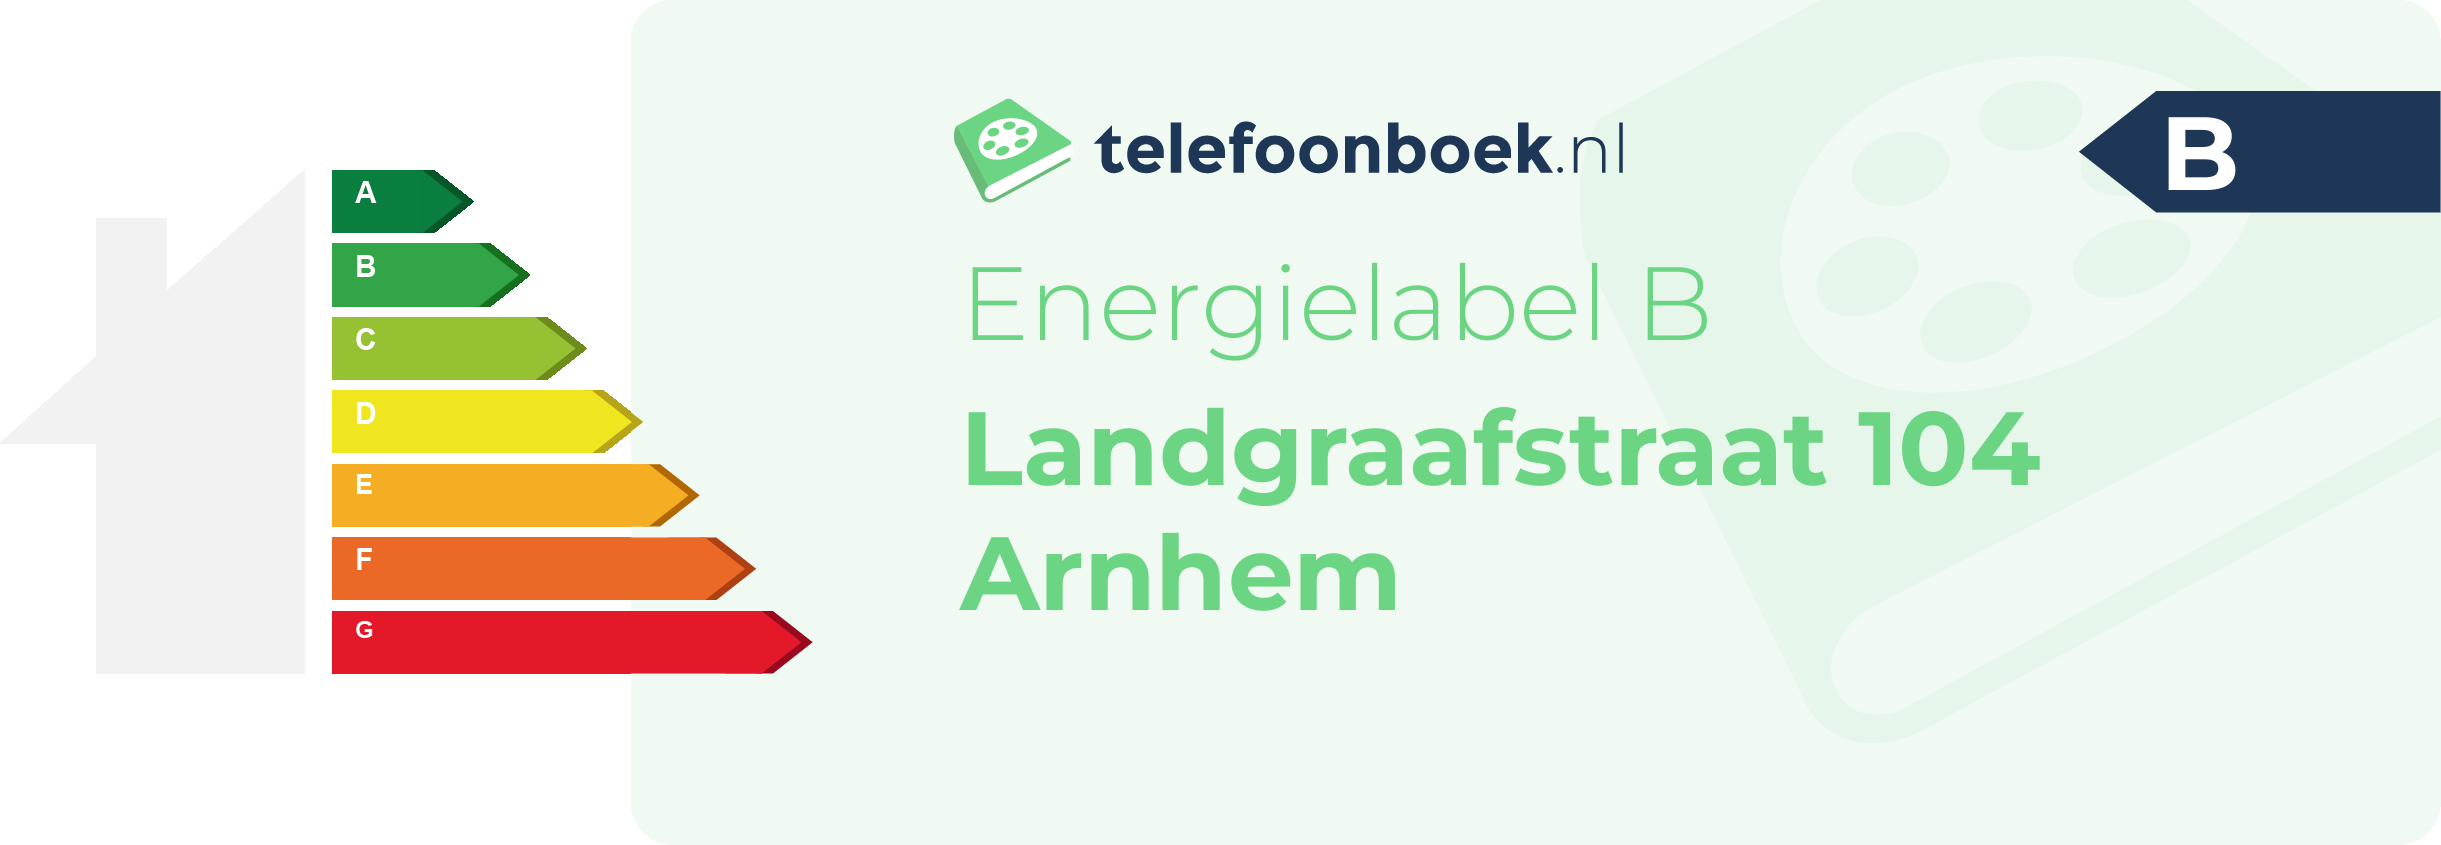 Energielabel Landgraafstraat 104 Arnhem